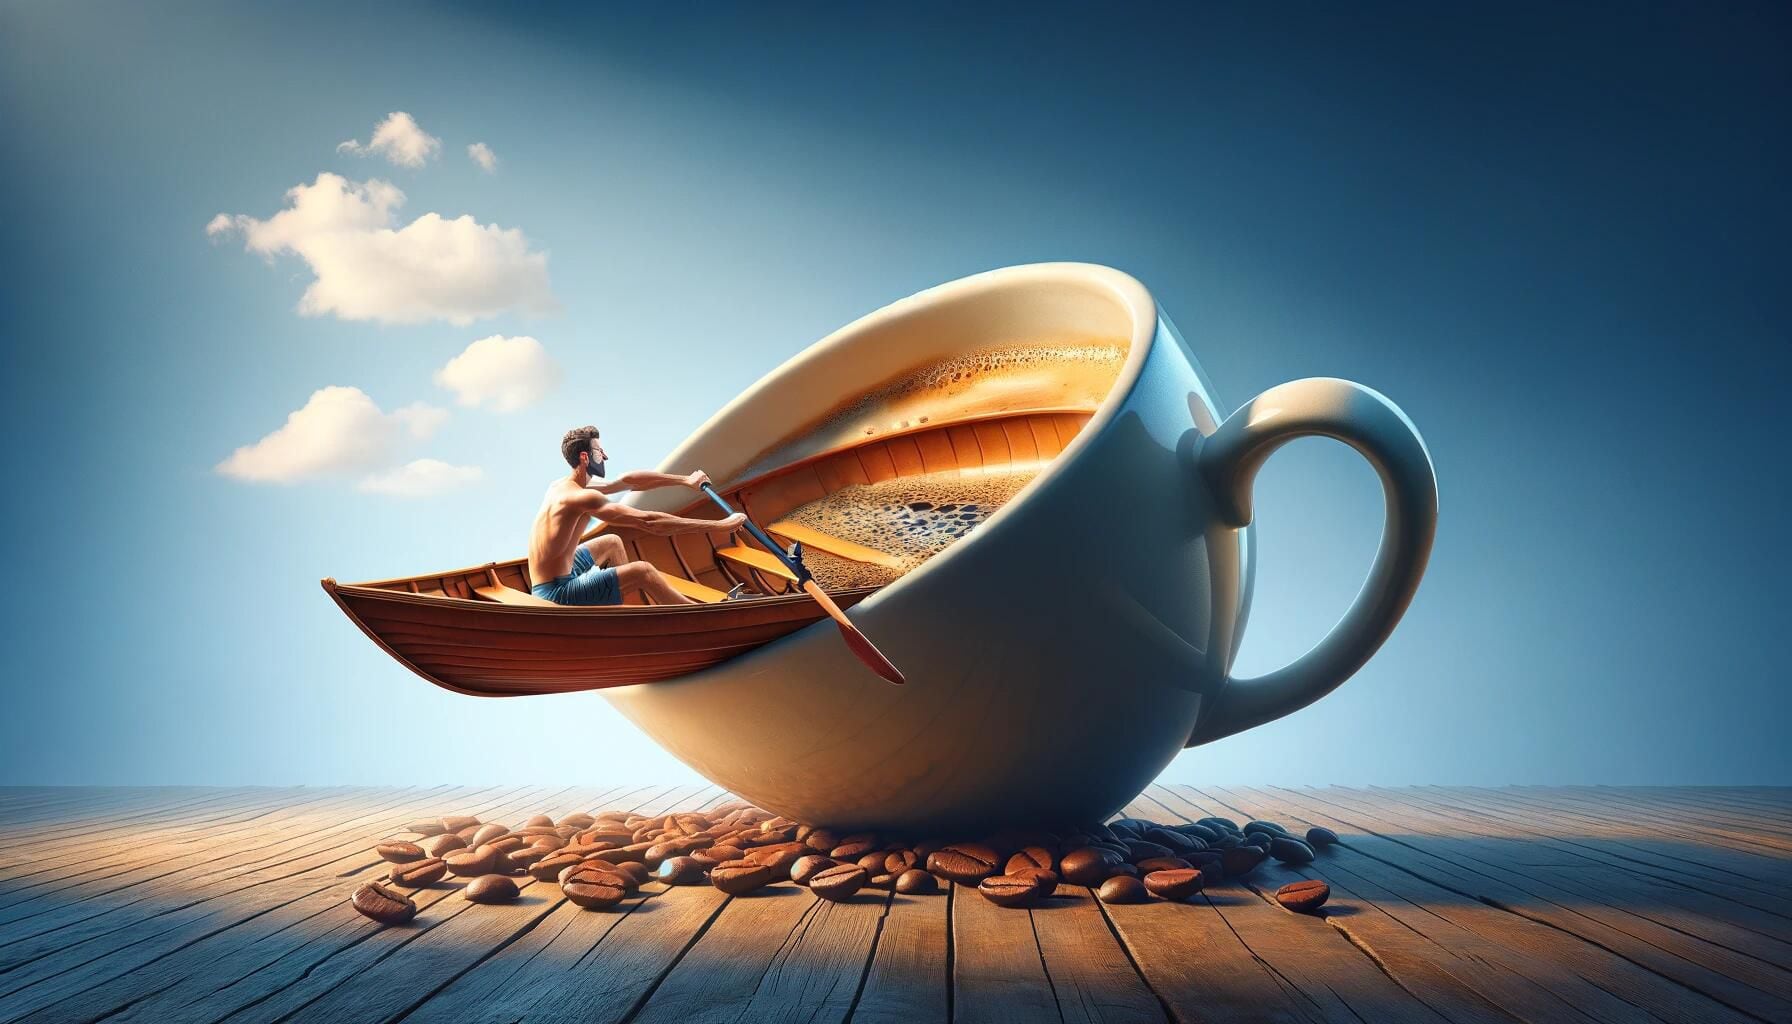 Ilustración surrealista de un hombre remando en el interior de una taza de café. Representación gráfica del consumo excesivo de cafeína para abordar las tareas diarias, resaltando los impactos en el sueño, la falta de descanso y el agotamiento. (Imagen ilustrativa Infobae)